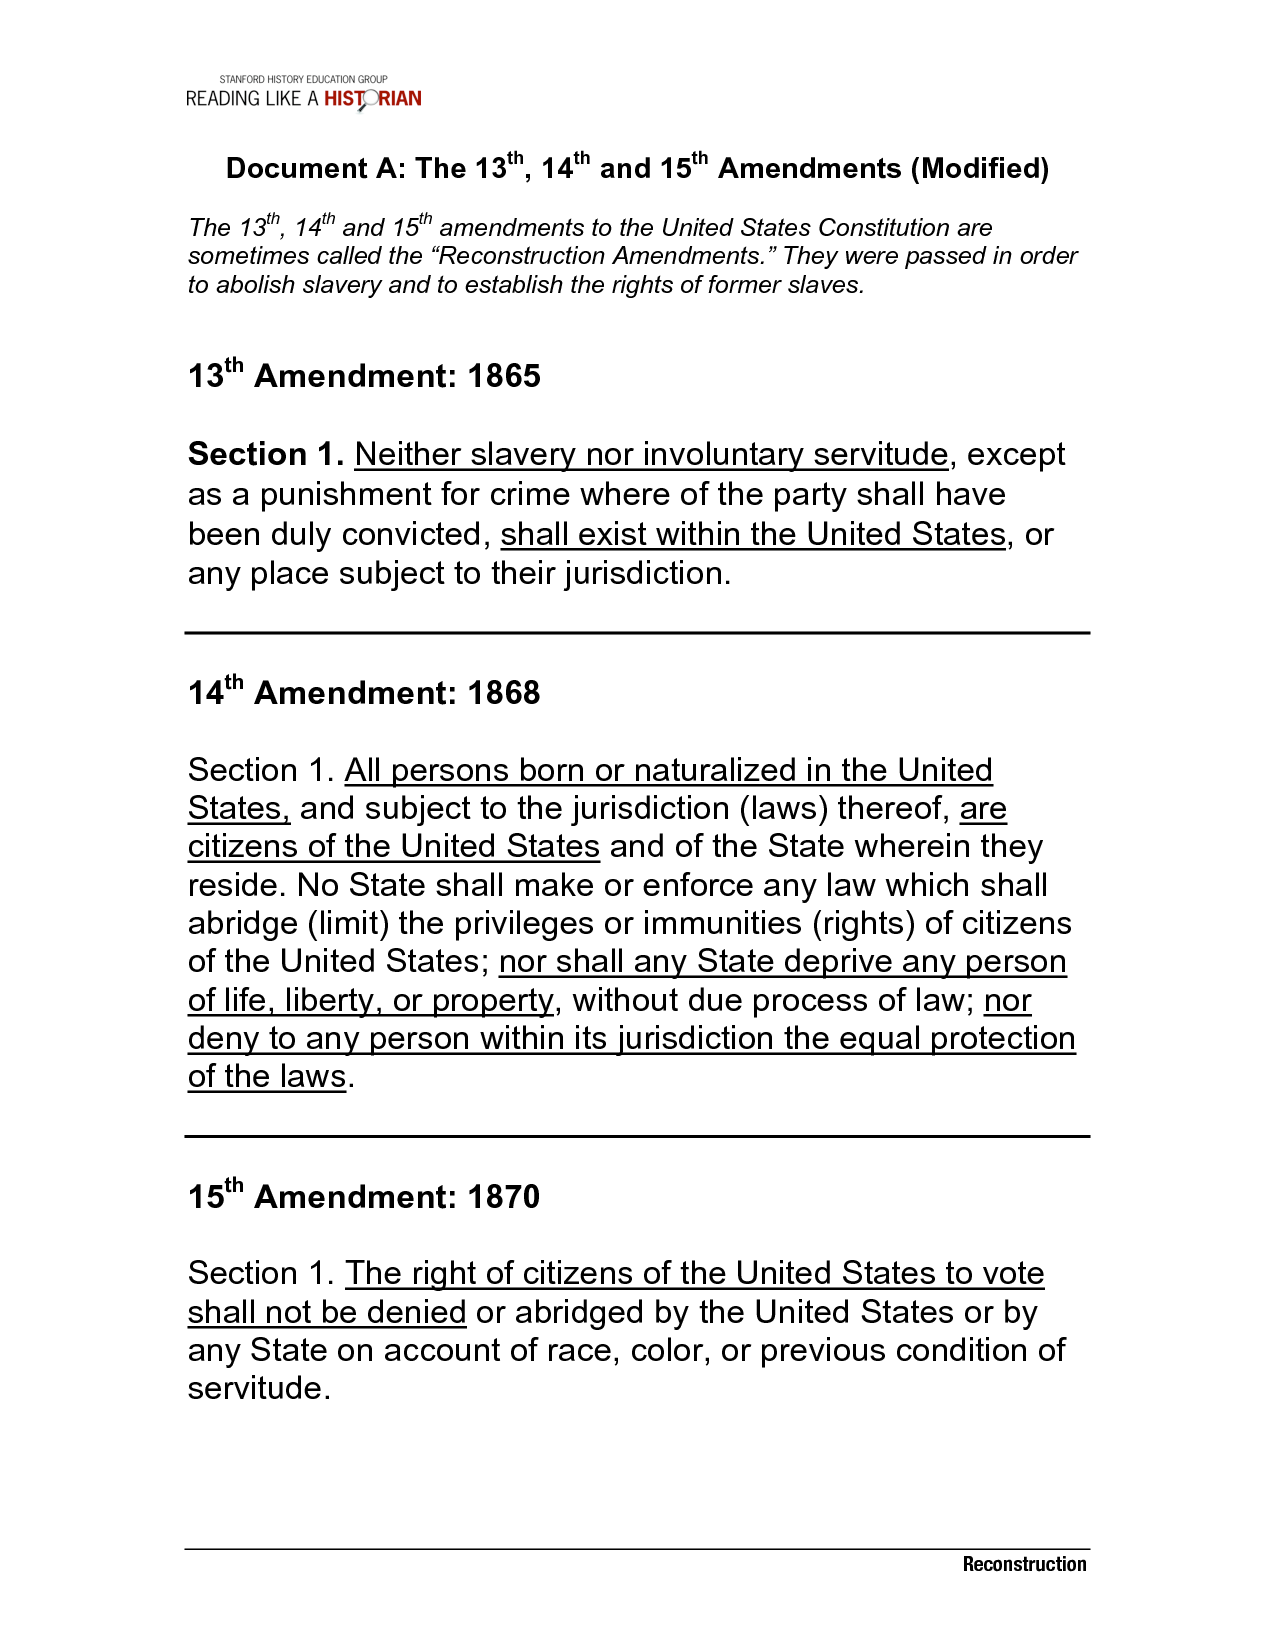 13th 14th and 15th Amendments Image